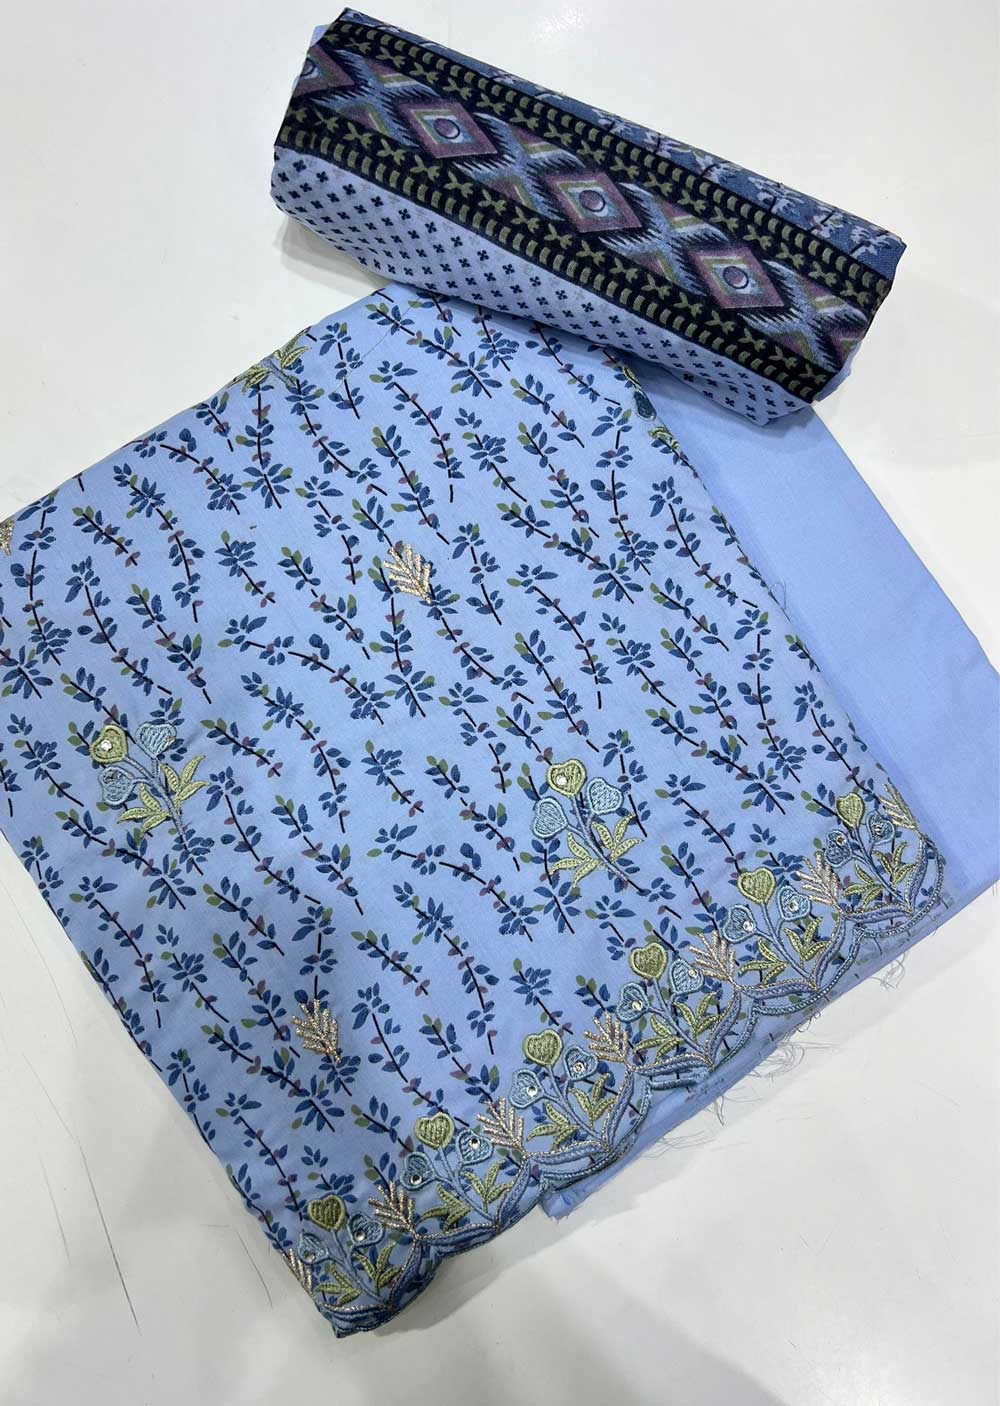 ATQ66642 - Unstitched Blue Cotton Suit - Memsaab Online